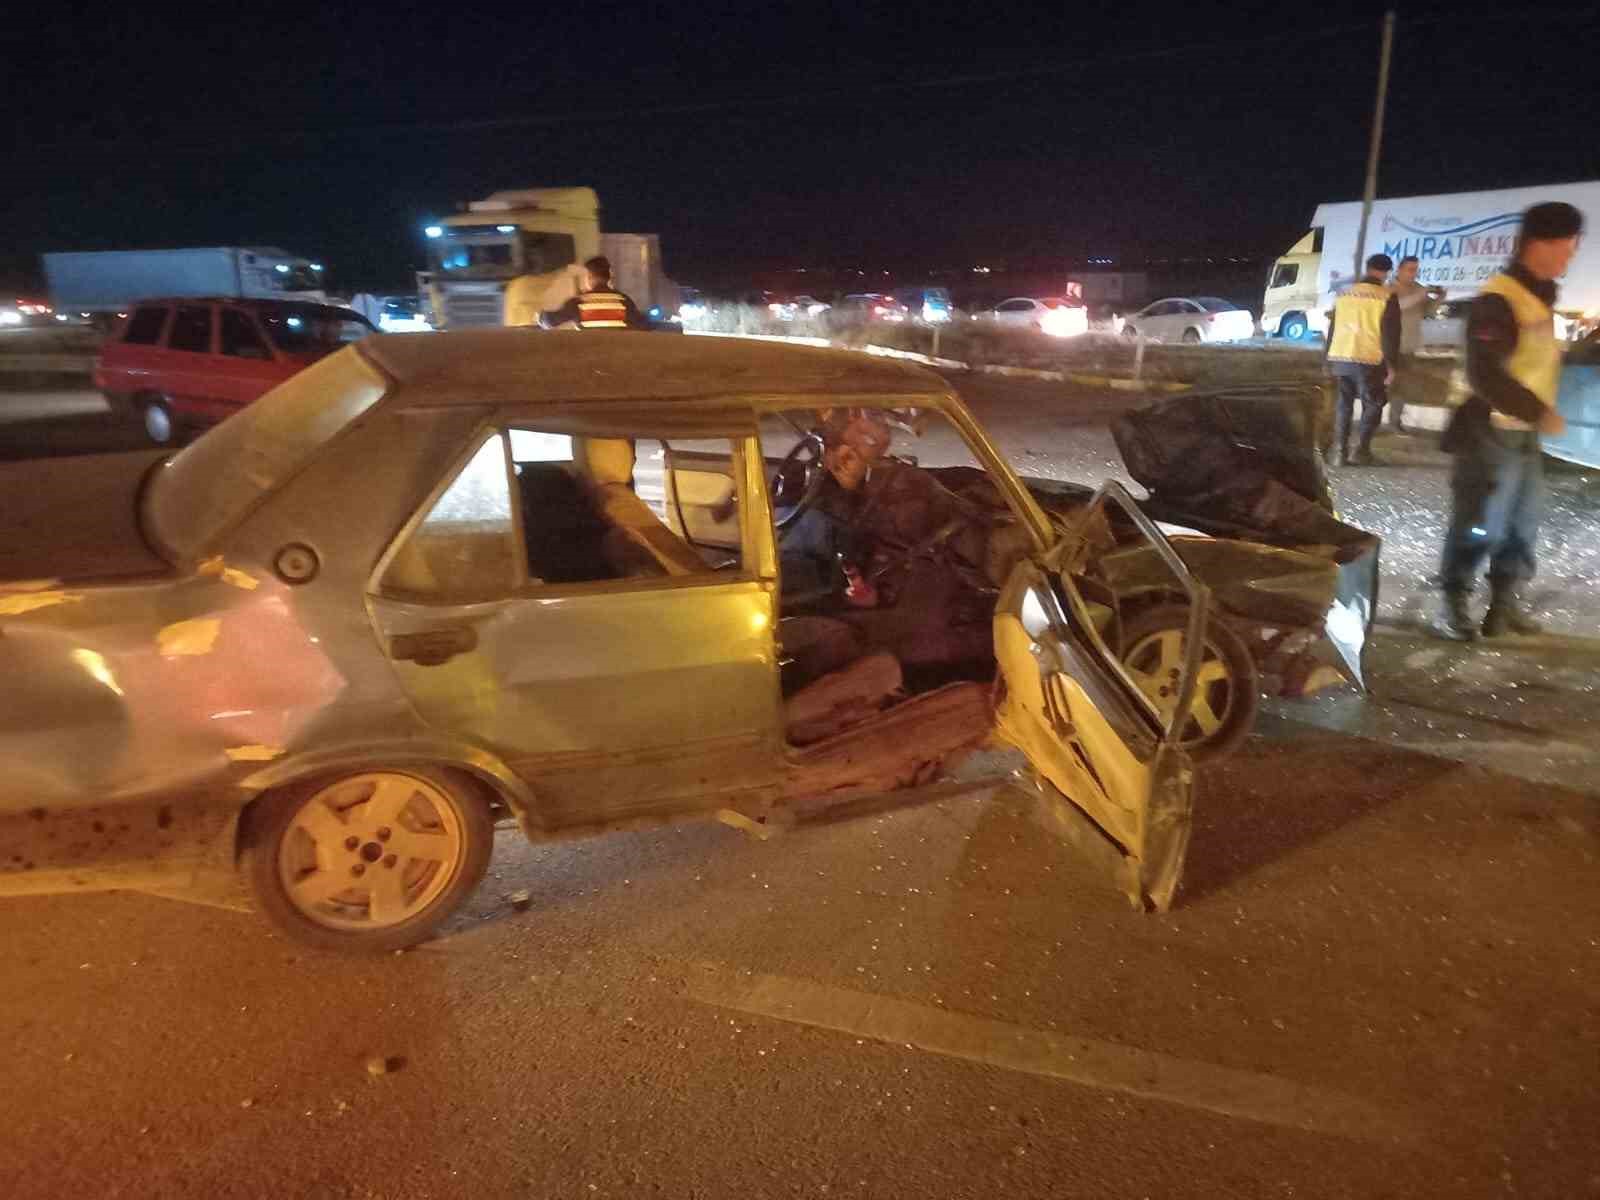 2 otomobilin çarpıştığı kazada 5 kişi yaralandı